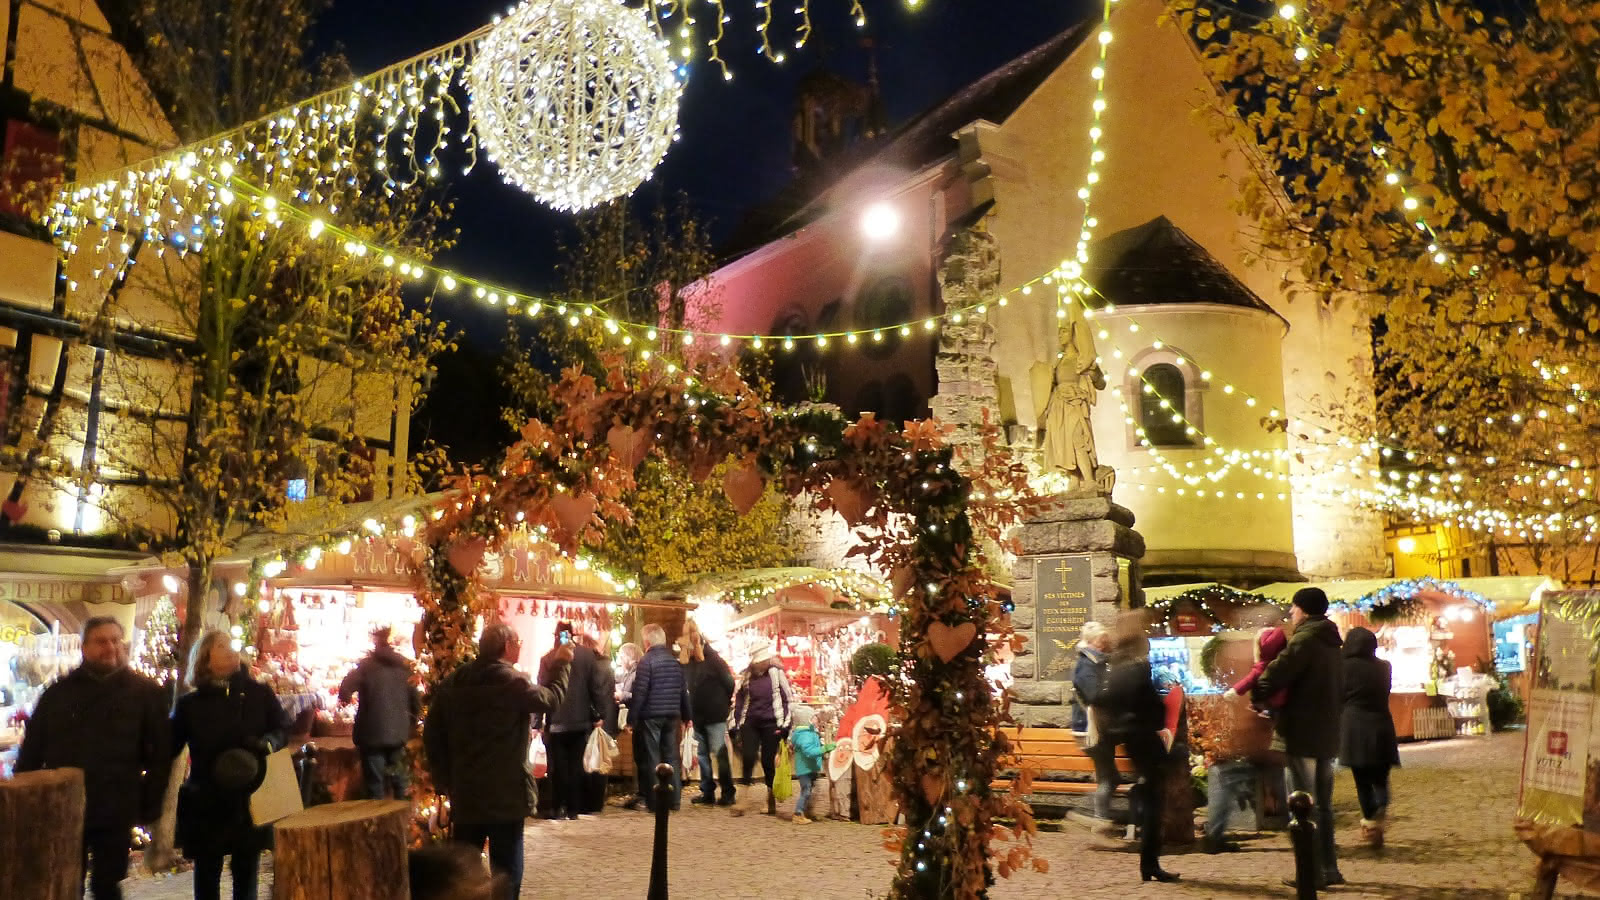 Annulation Marché de Noël authentique - Eguisheim | Route des Vins d'Alsace